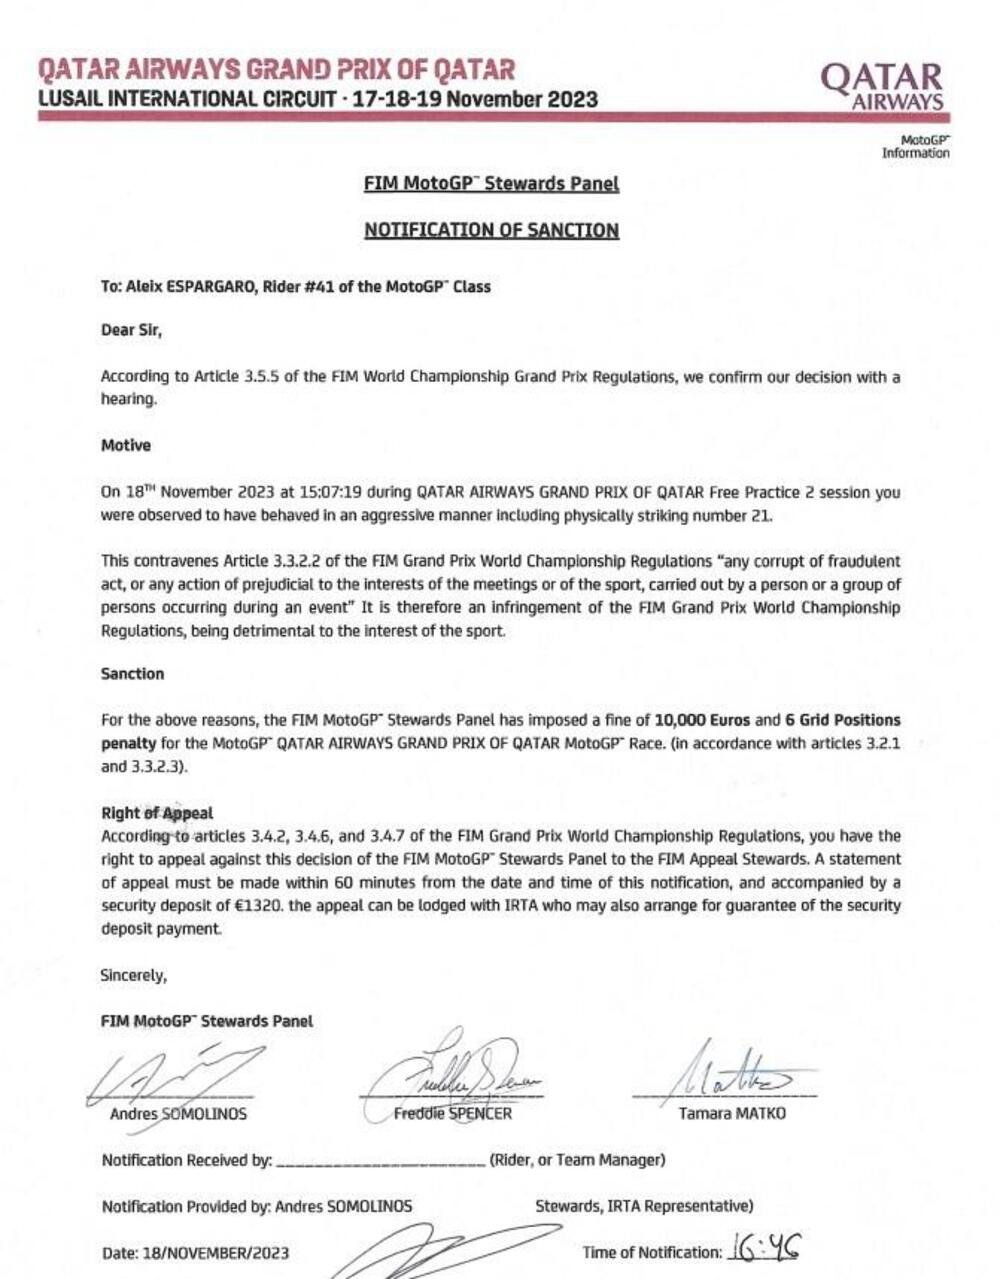 Il documento che attesta la decisione dello stewards panel nei confronti di Aleix